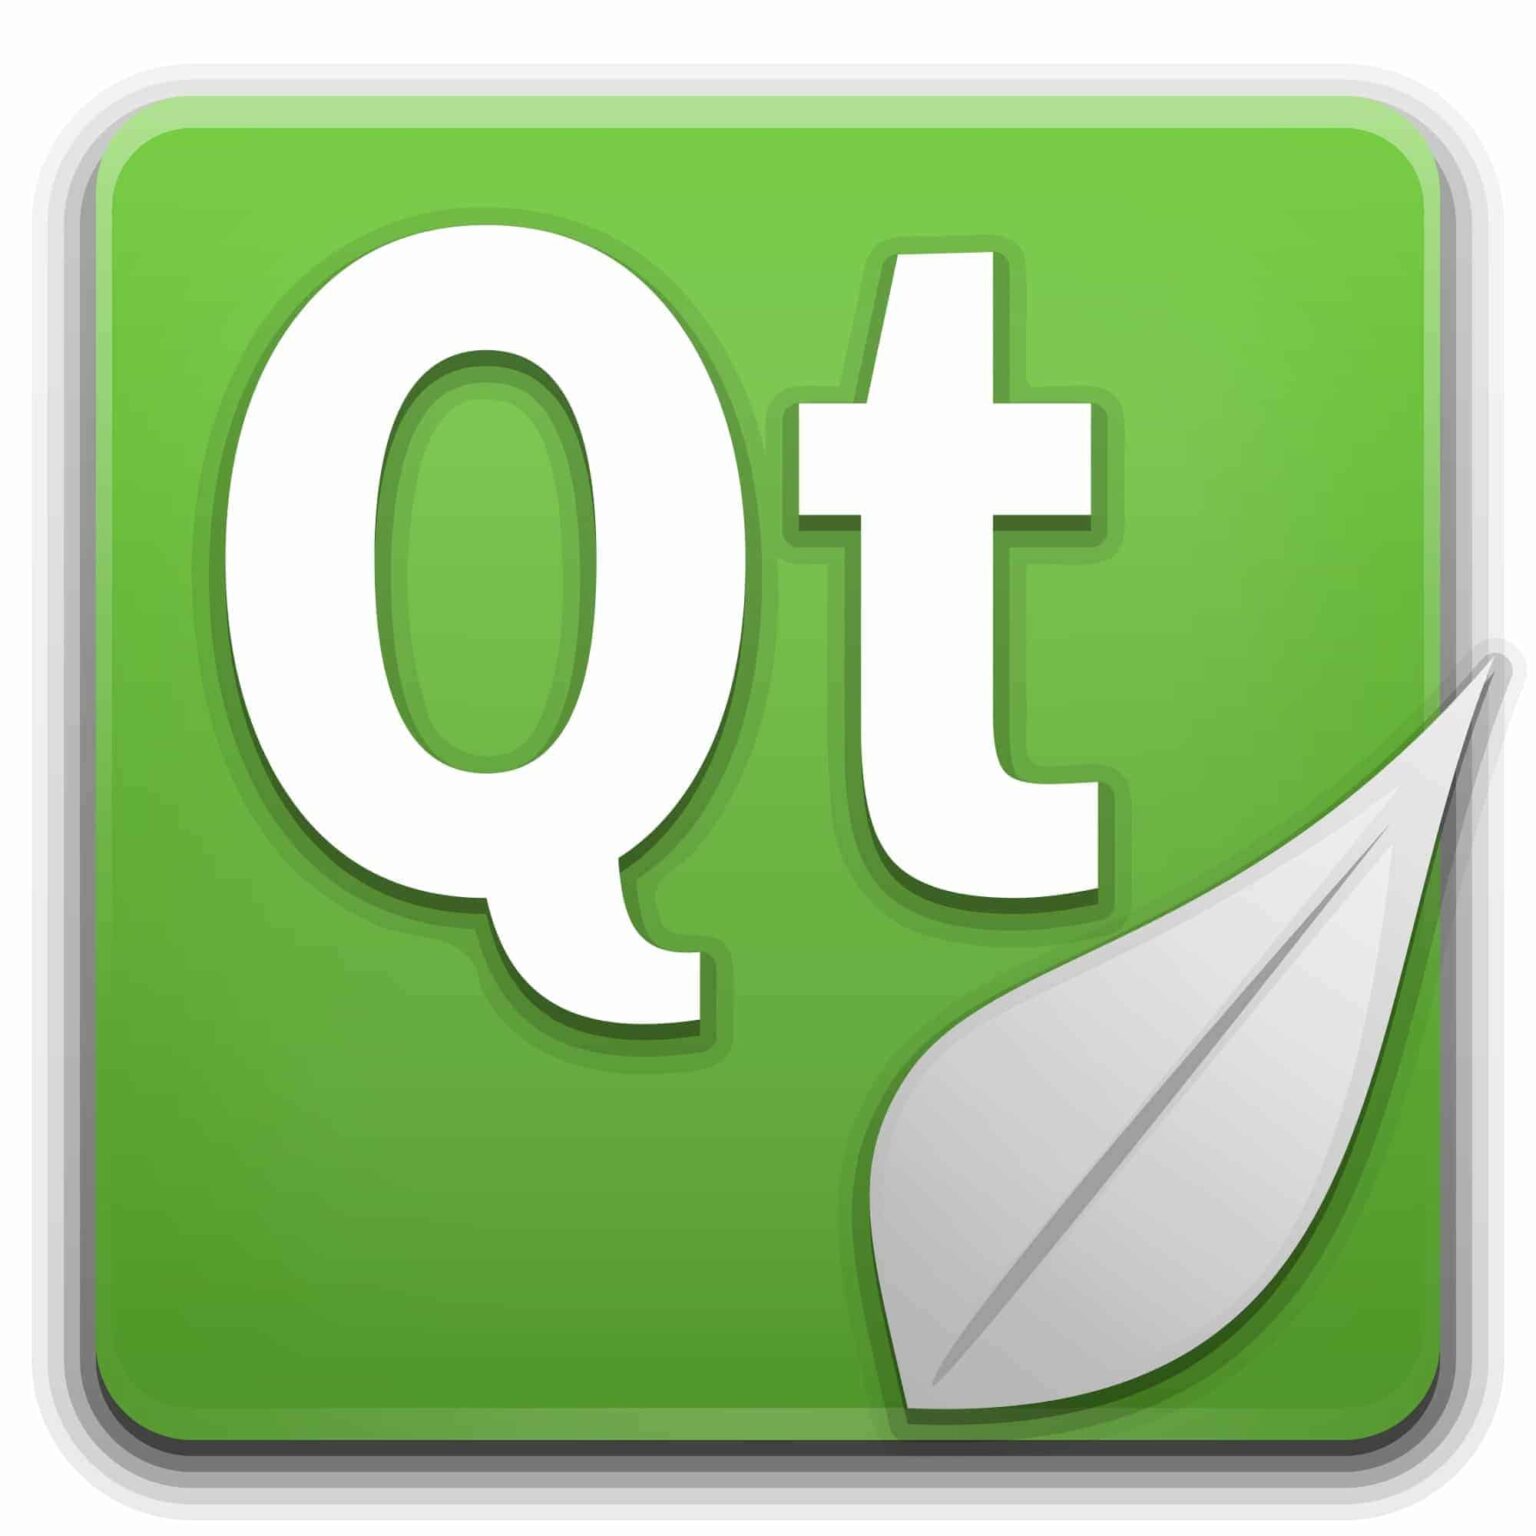 Qt Creator 12 lançado com integração do Godbolt Compiler Explorer